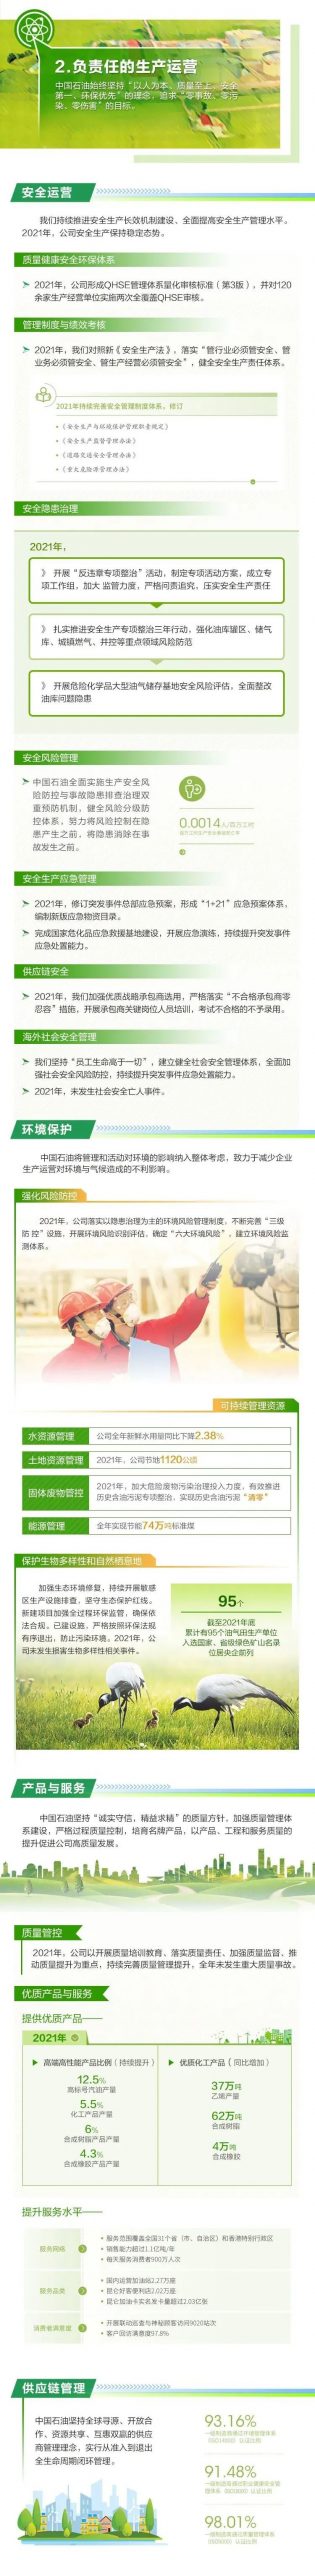 重磅 | 中国石油发布2021年度社会责任报告